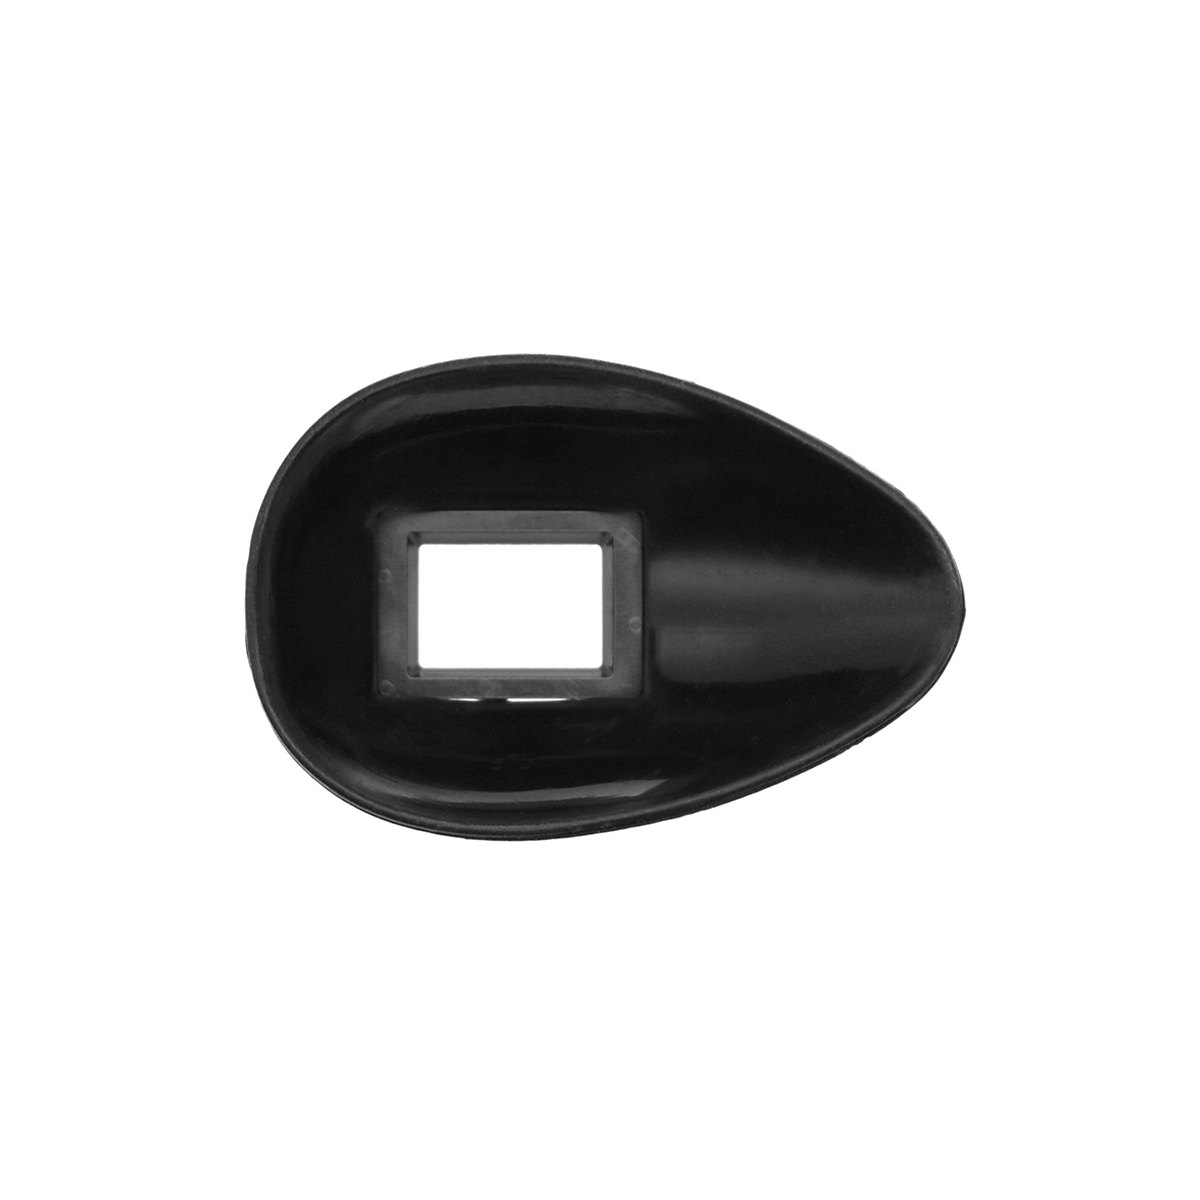 22Mm Viewfinder Eyepiece Eye Cup for DSLR Camera D750 D610 D600 D90 D80